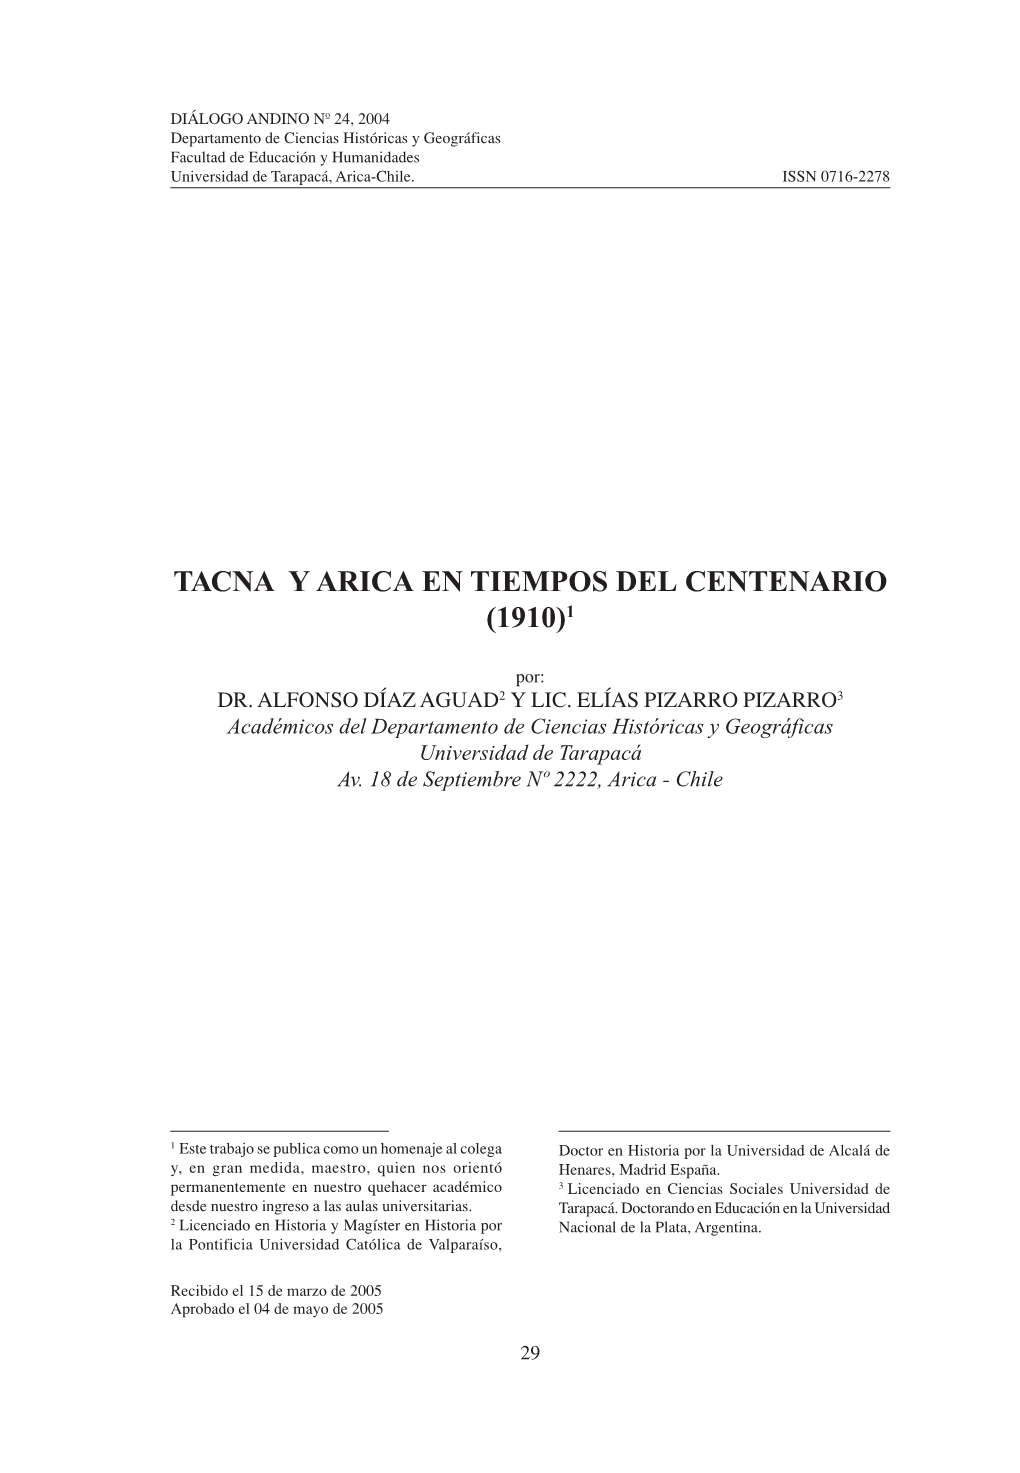 Tacna Y Arica En Tiempos Del Centenario (1910)1